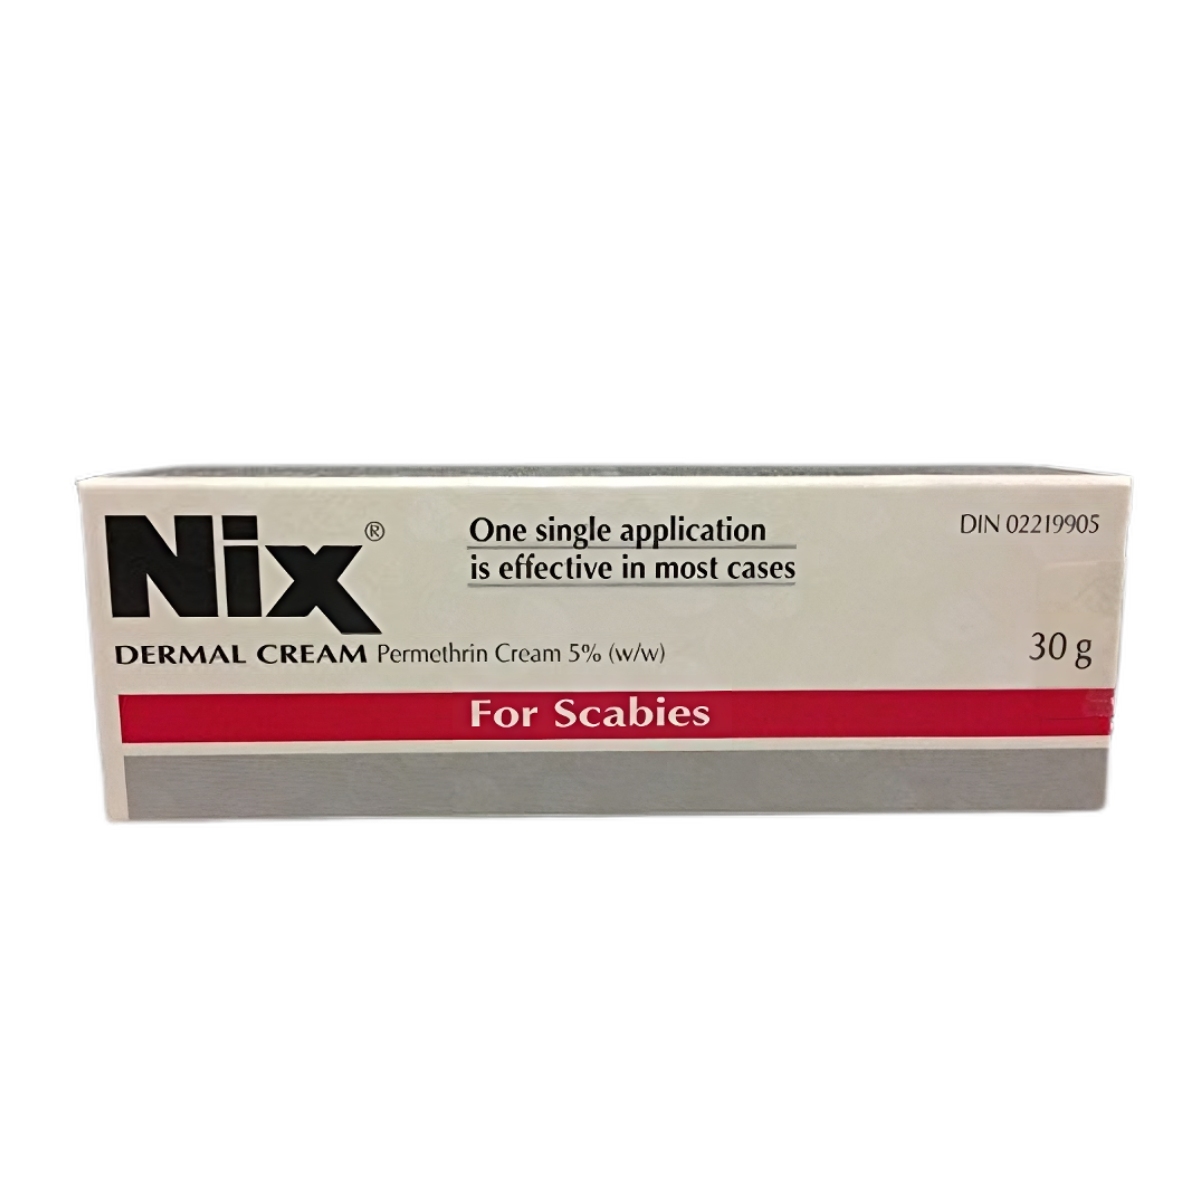 Buy Nix Dermal Cream 30g [Permethrin 5%] - Pharmacy24®